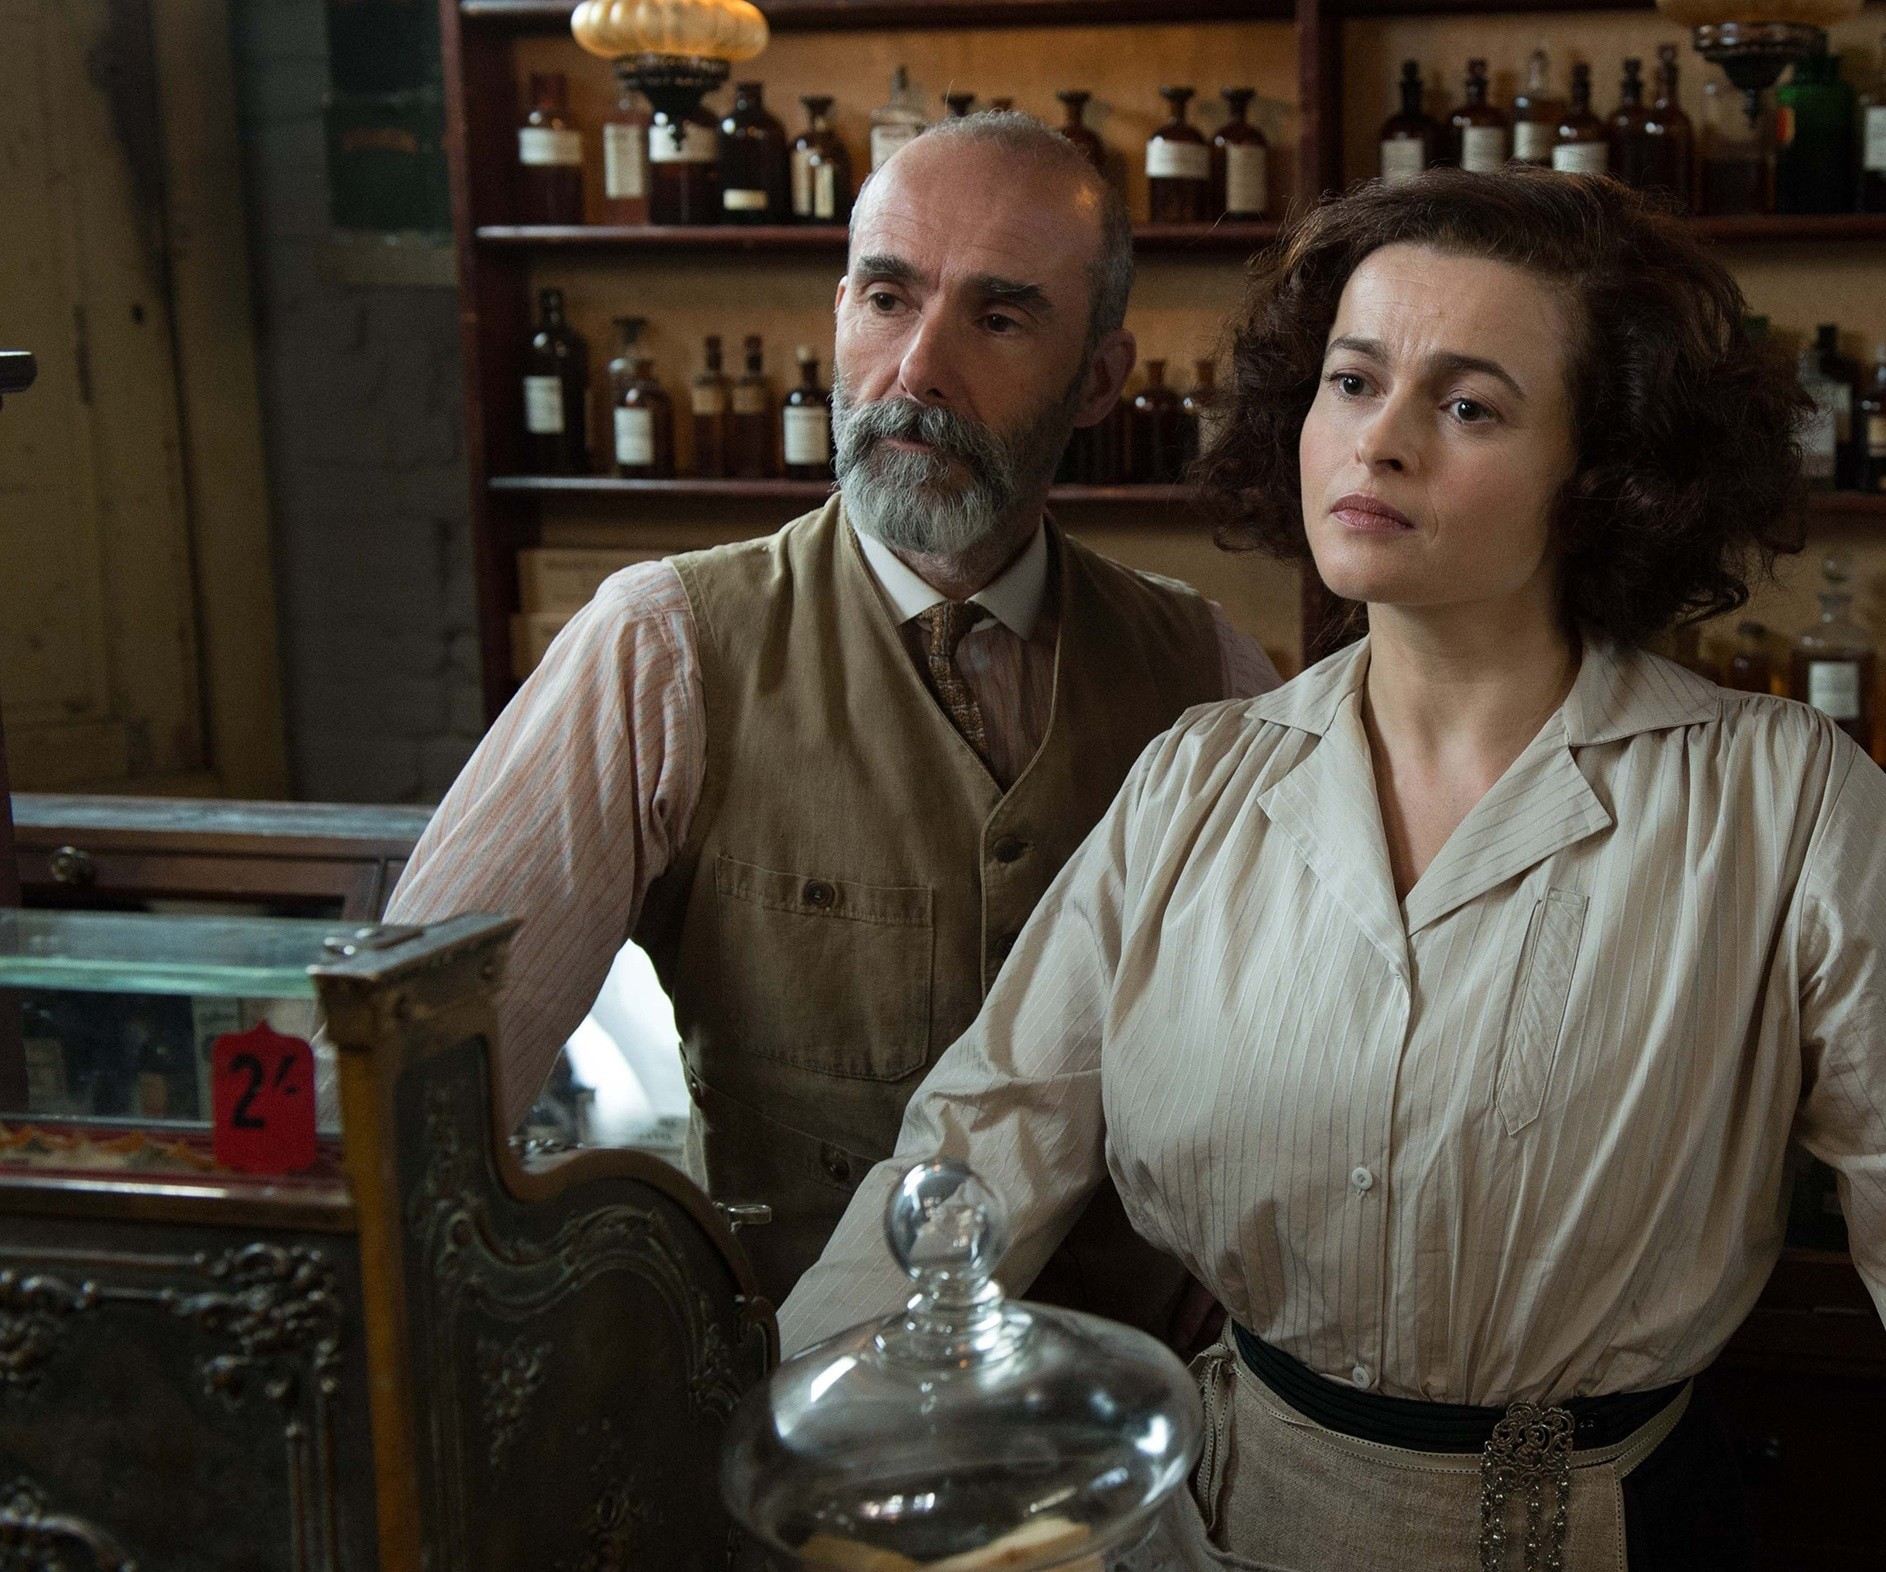 Finbar Lynch stars as Hugh Ellyn and Helena Bonham Carter stars as Edith Ellyn in Focus Features' Suffragette (2015)